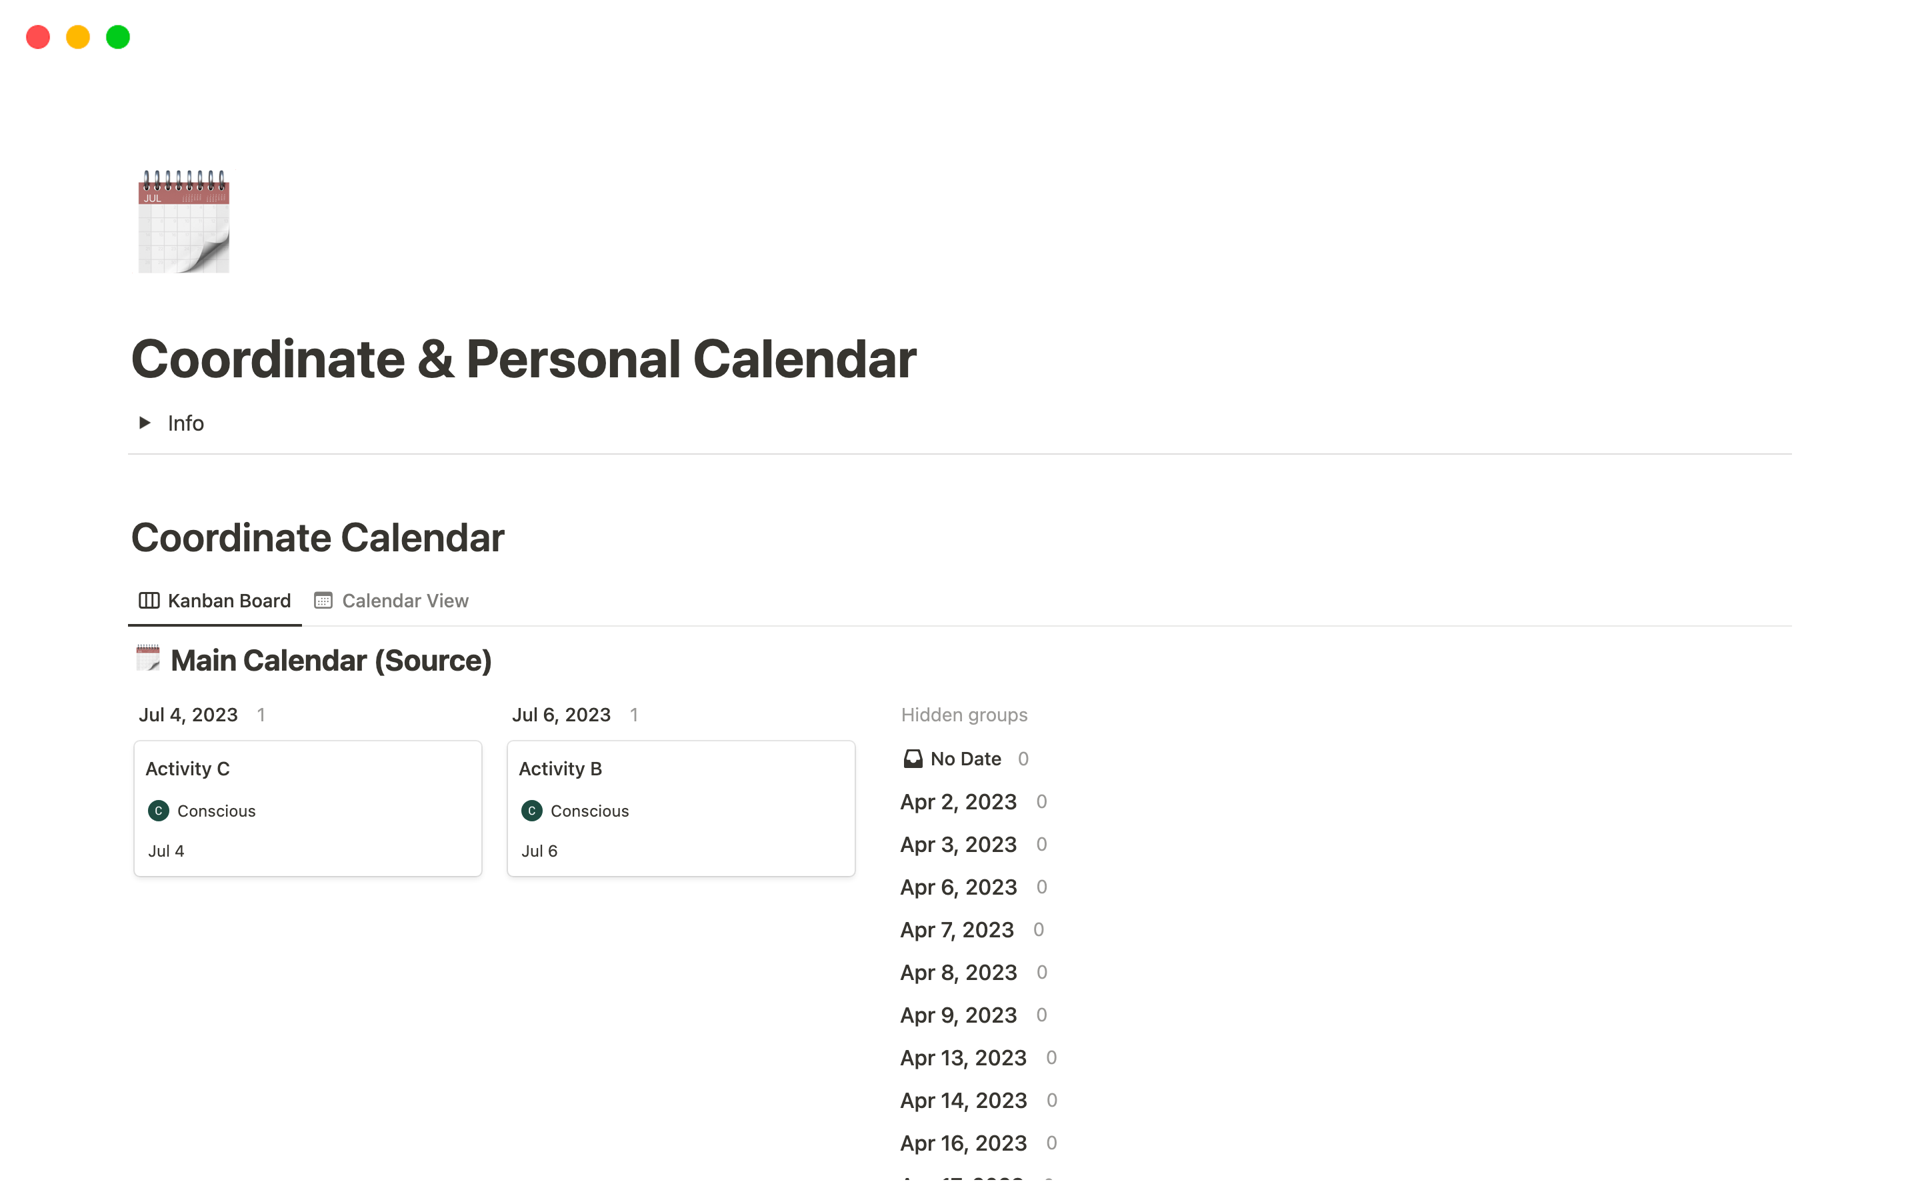 Uma prévia do modelo para Coordinate & Personal Calendar